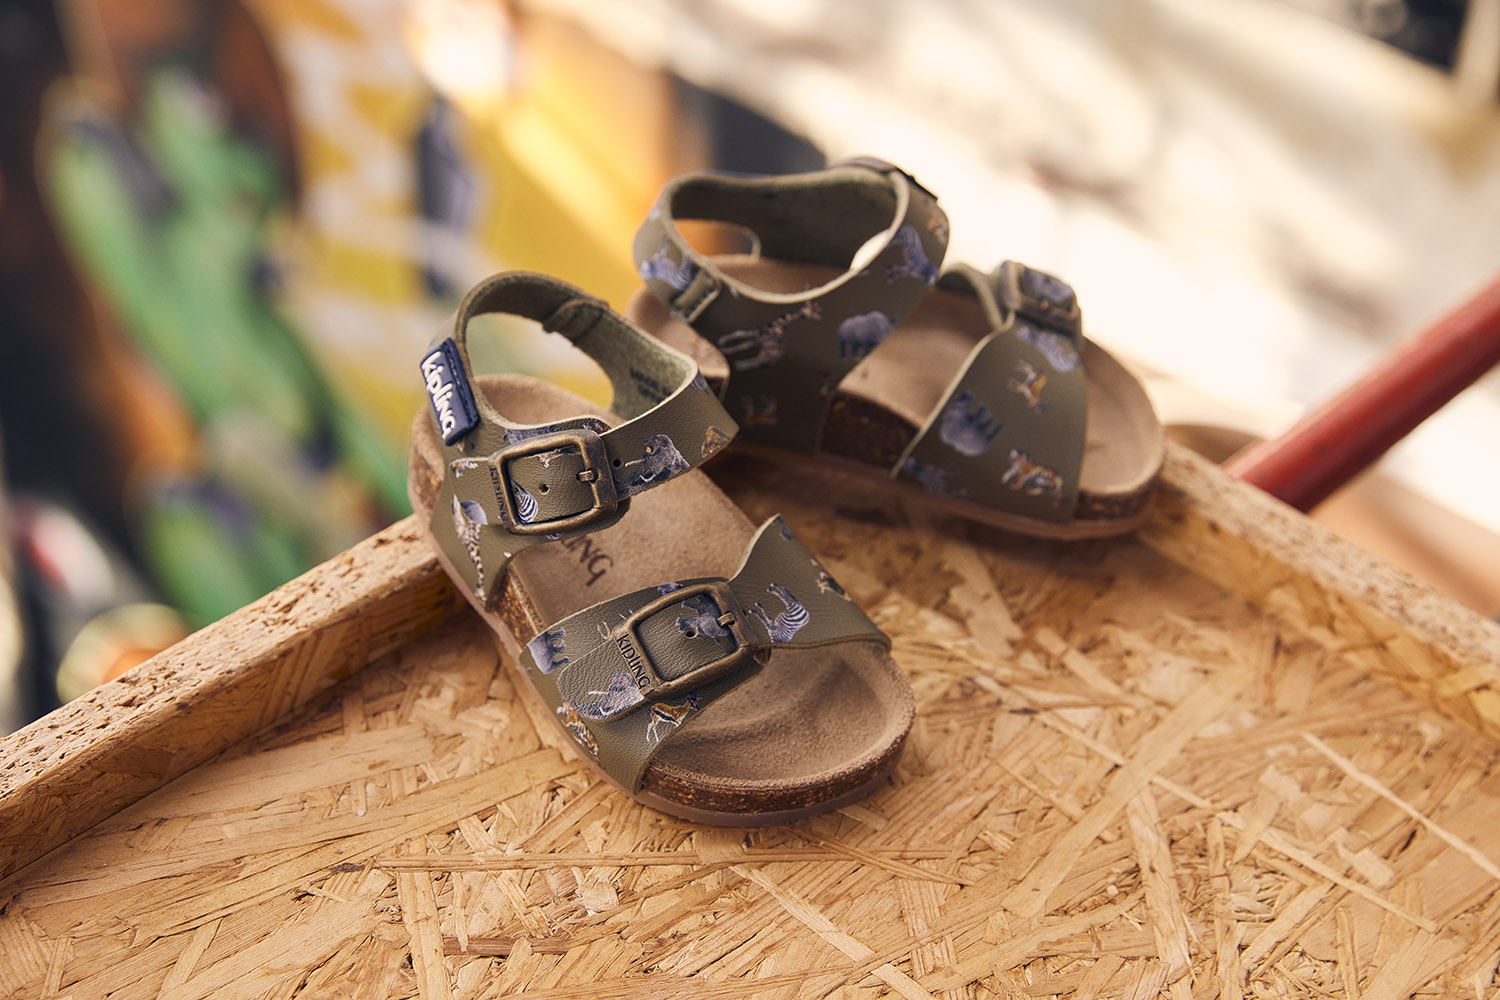 Museum Verstrooien de studie Stoere jongenssandalen met dieren | Kipling schoenen